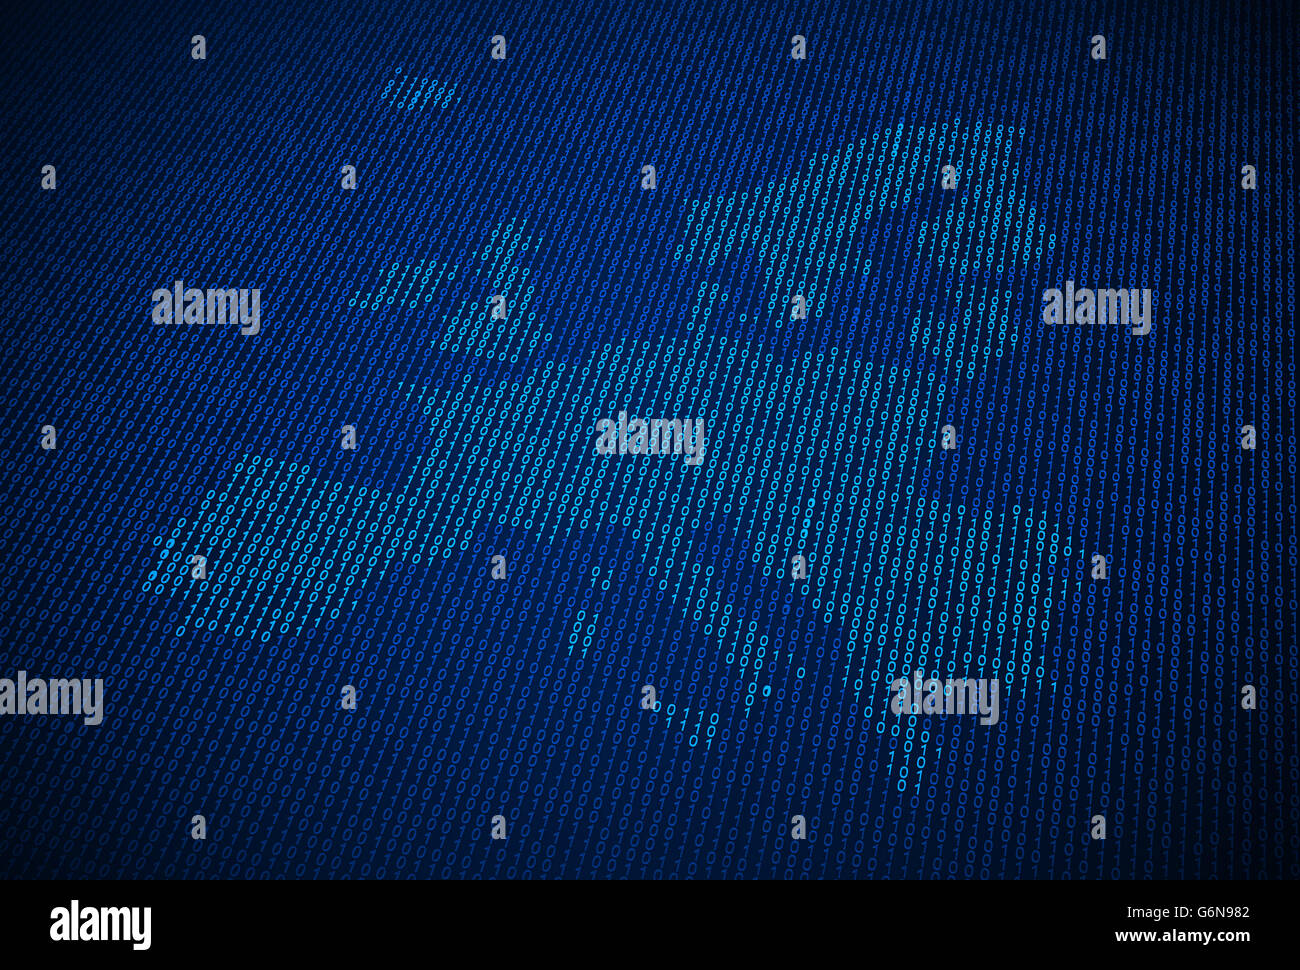 Carte de l'Union européenne faite de code binaire Banque D'Images